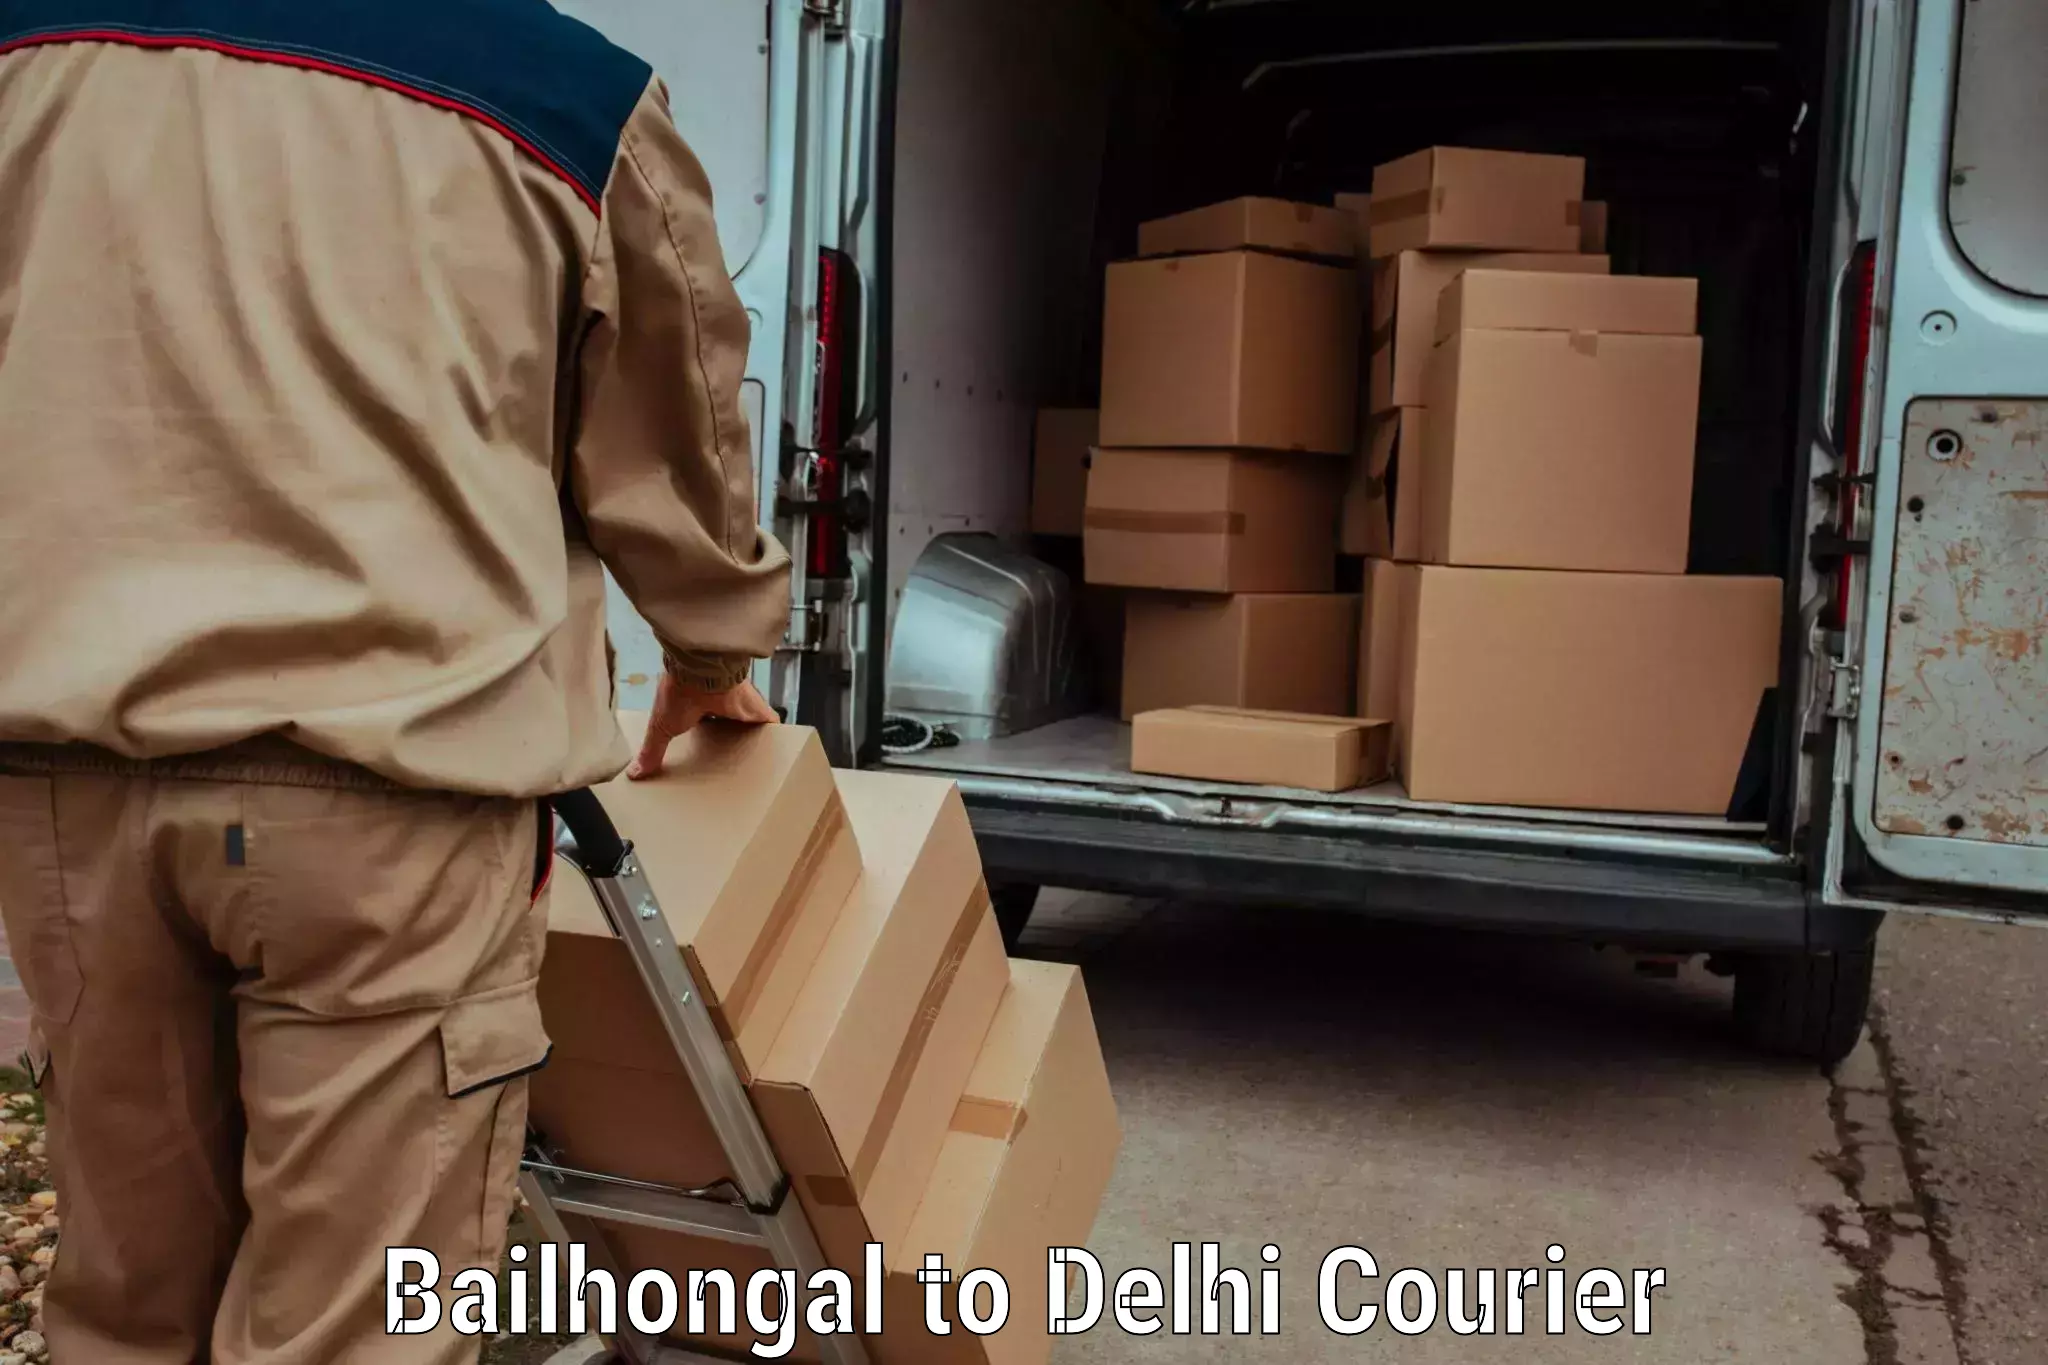 Quick dispatch service in Bailhongal to Jamia Millia Islamia New Delhi